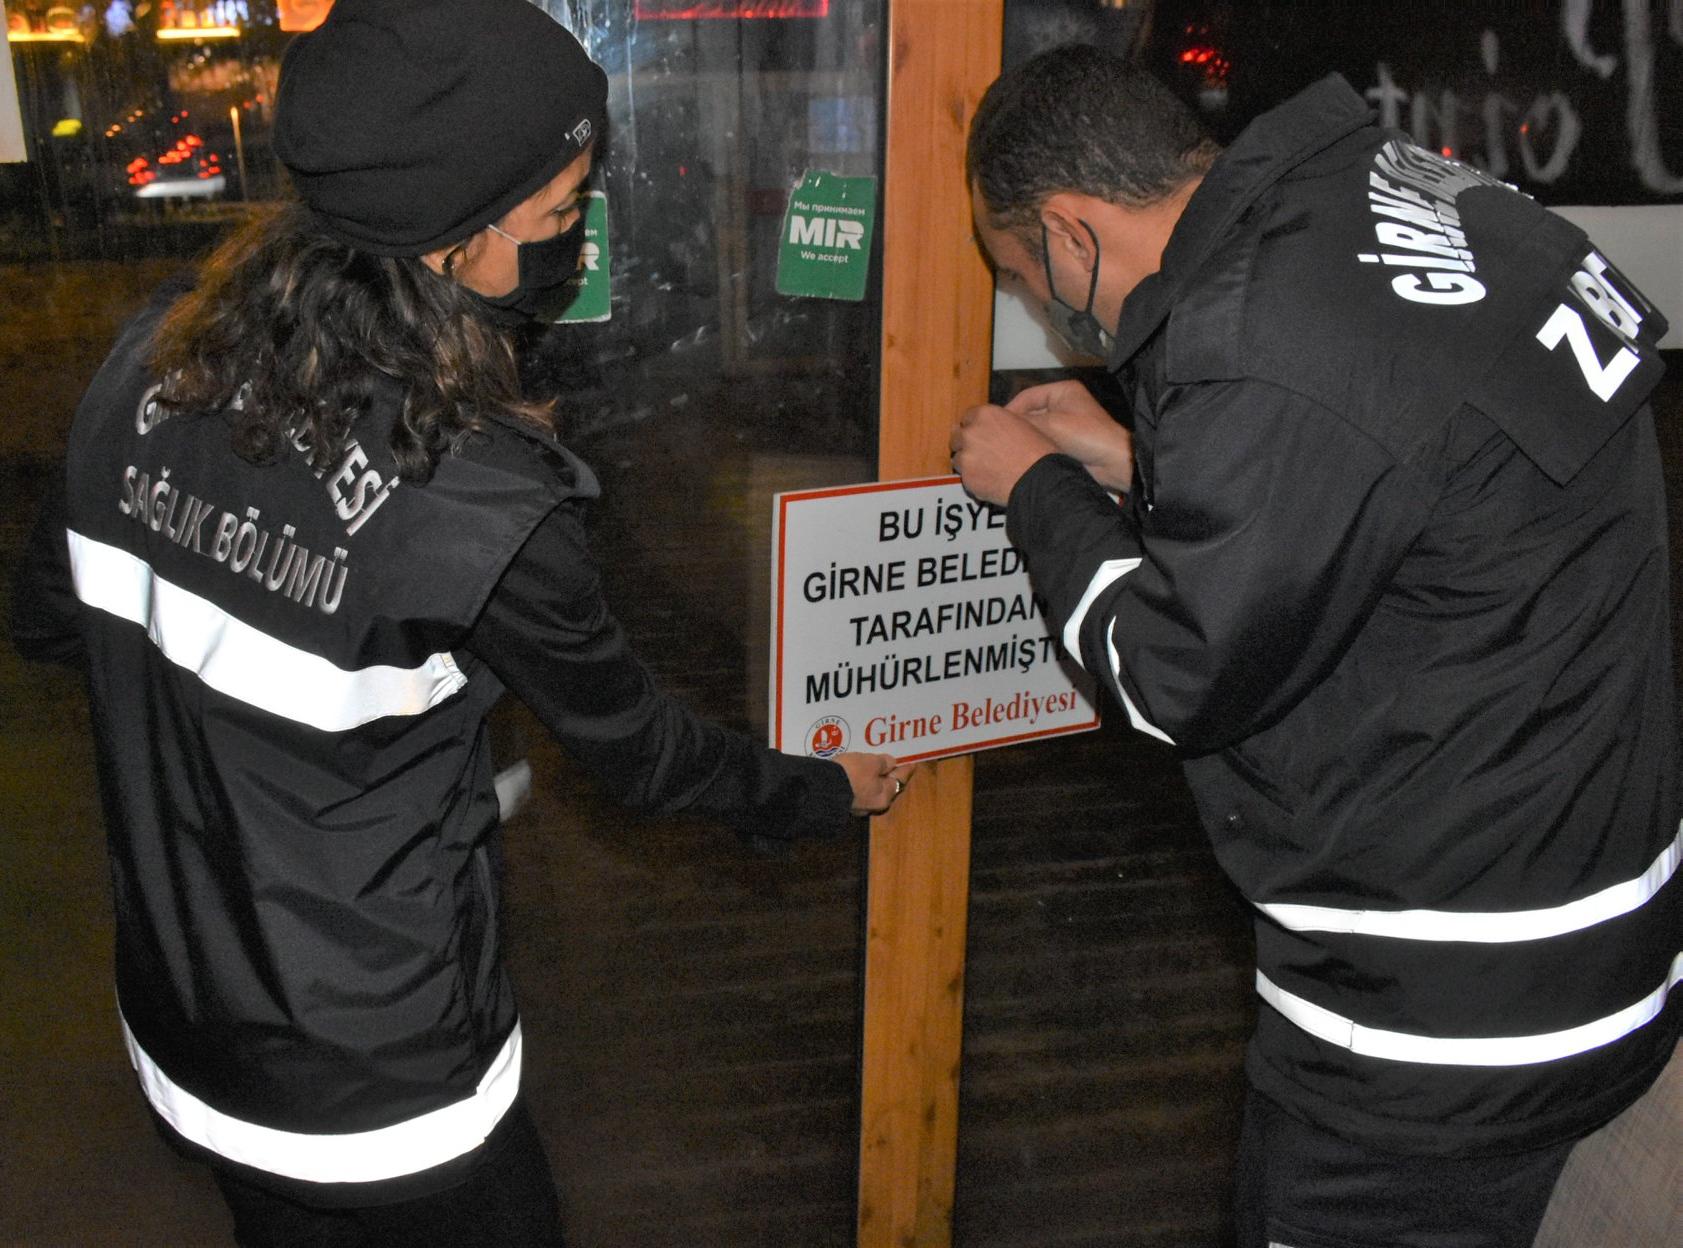 Girne Belediyesi’nden Denetim 4 İşyeri Kapatıldı